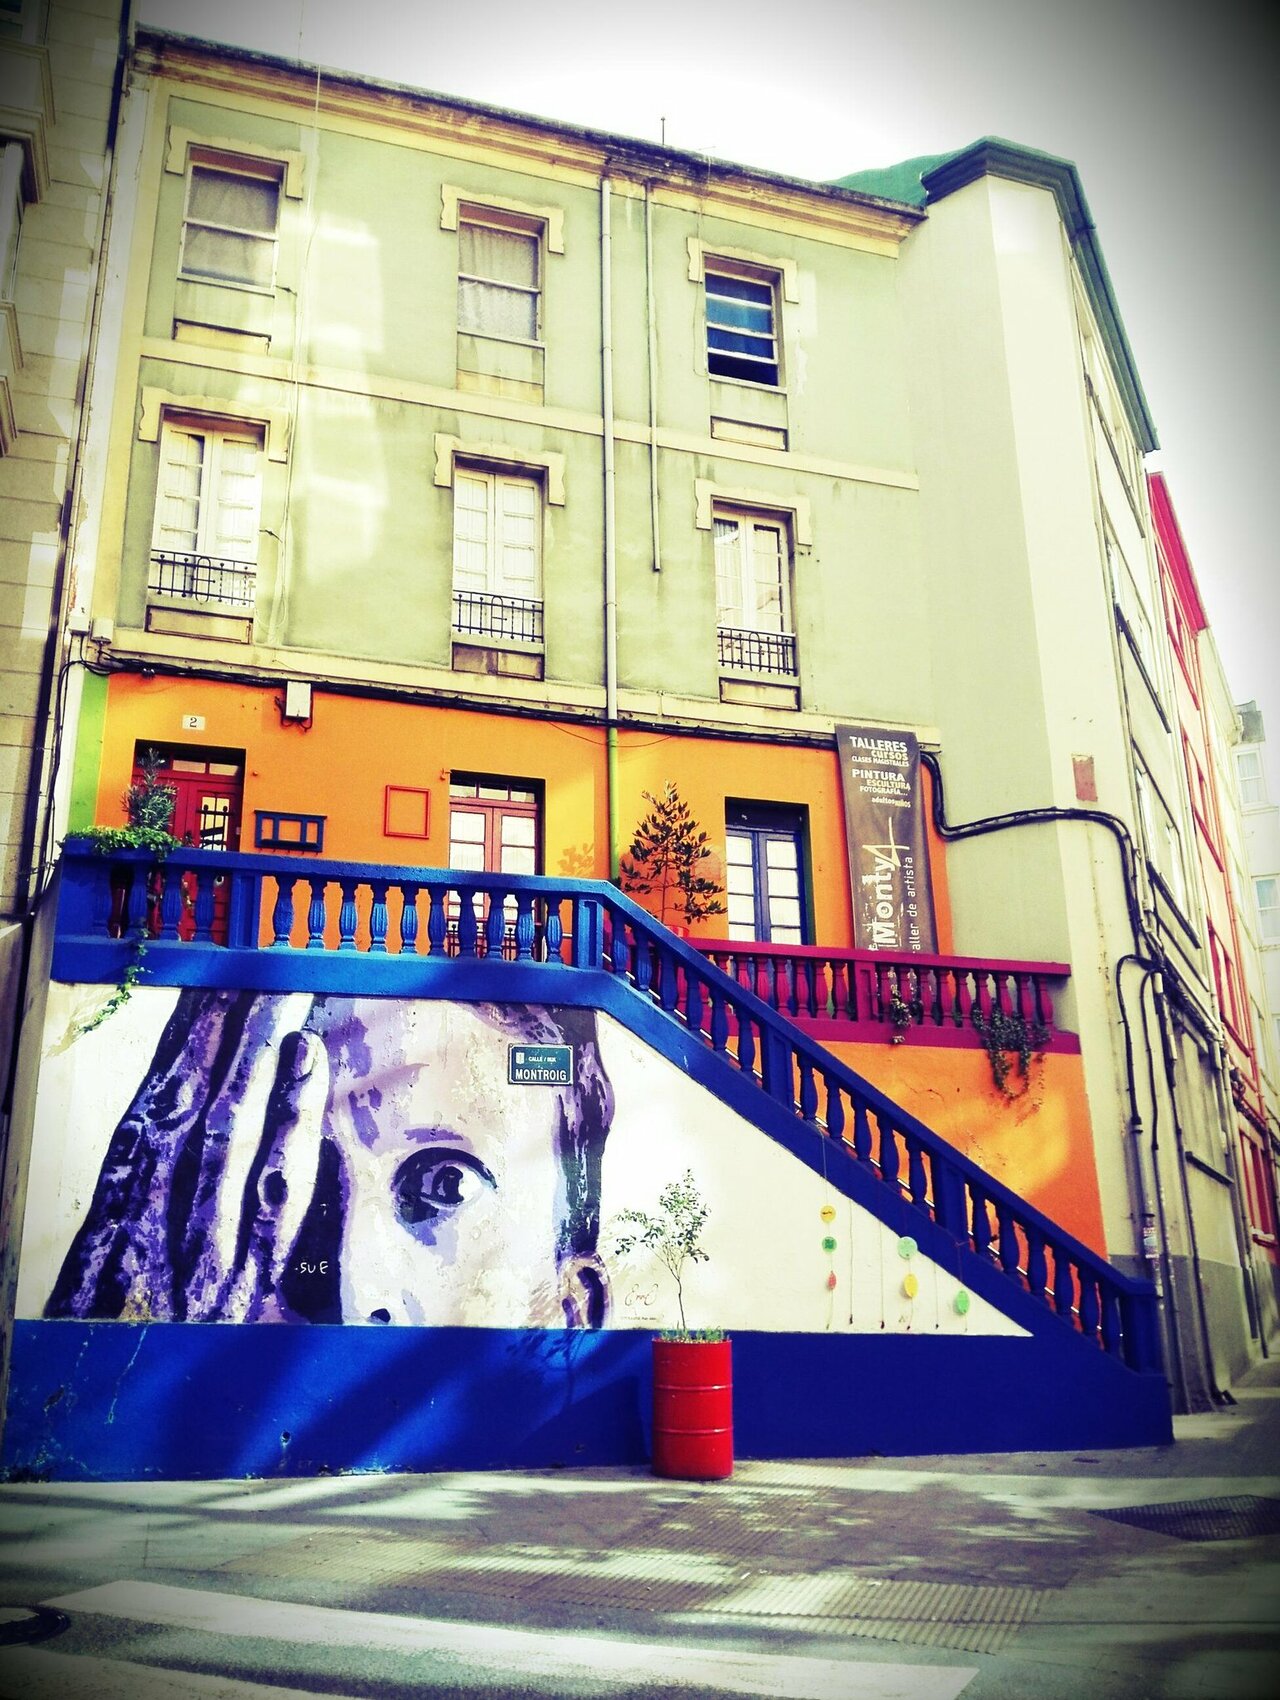 コルーニャ街散歩☆ 寄り道がおもしろいです。
#art #design #collar #painting #coruna #town #cupcake #streetart #graffiti 
#散歩 #ストリート #アート http://t.co/azNglKomOx